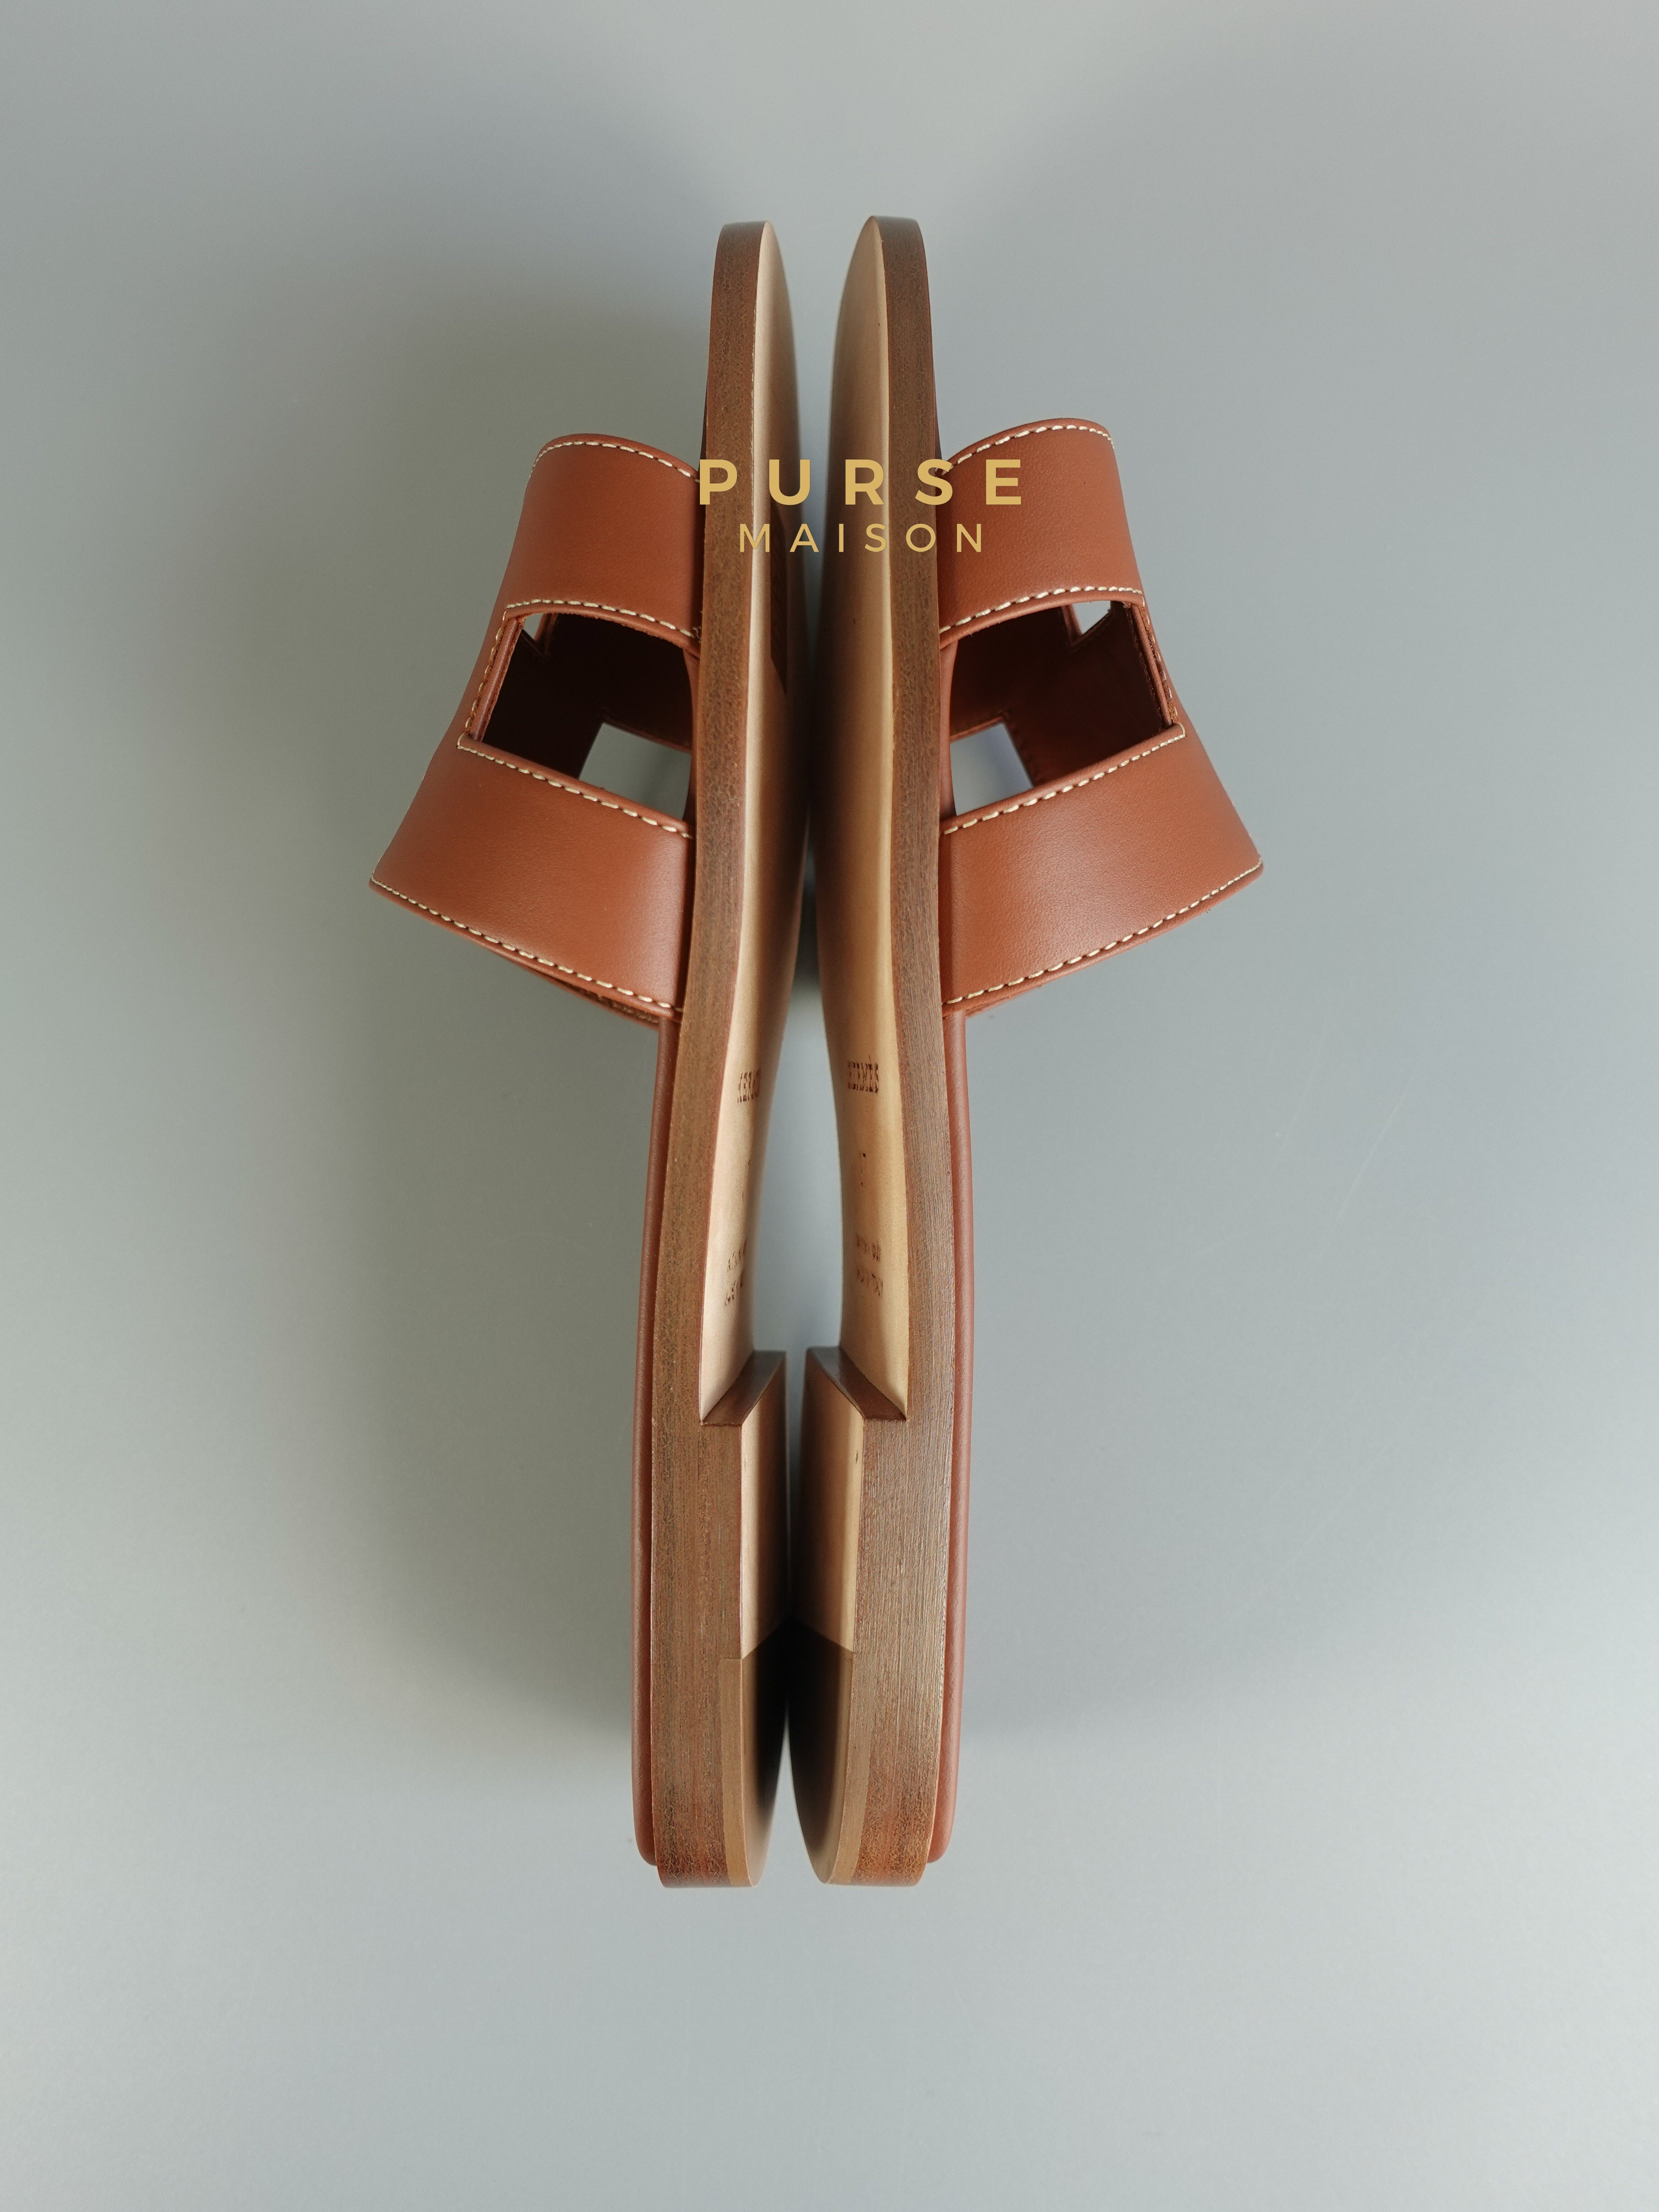 Hermes Oran Sandals Brown (Gold) Size 37 EU (24 cm) | Purse Maison Luxury Bags Shop